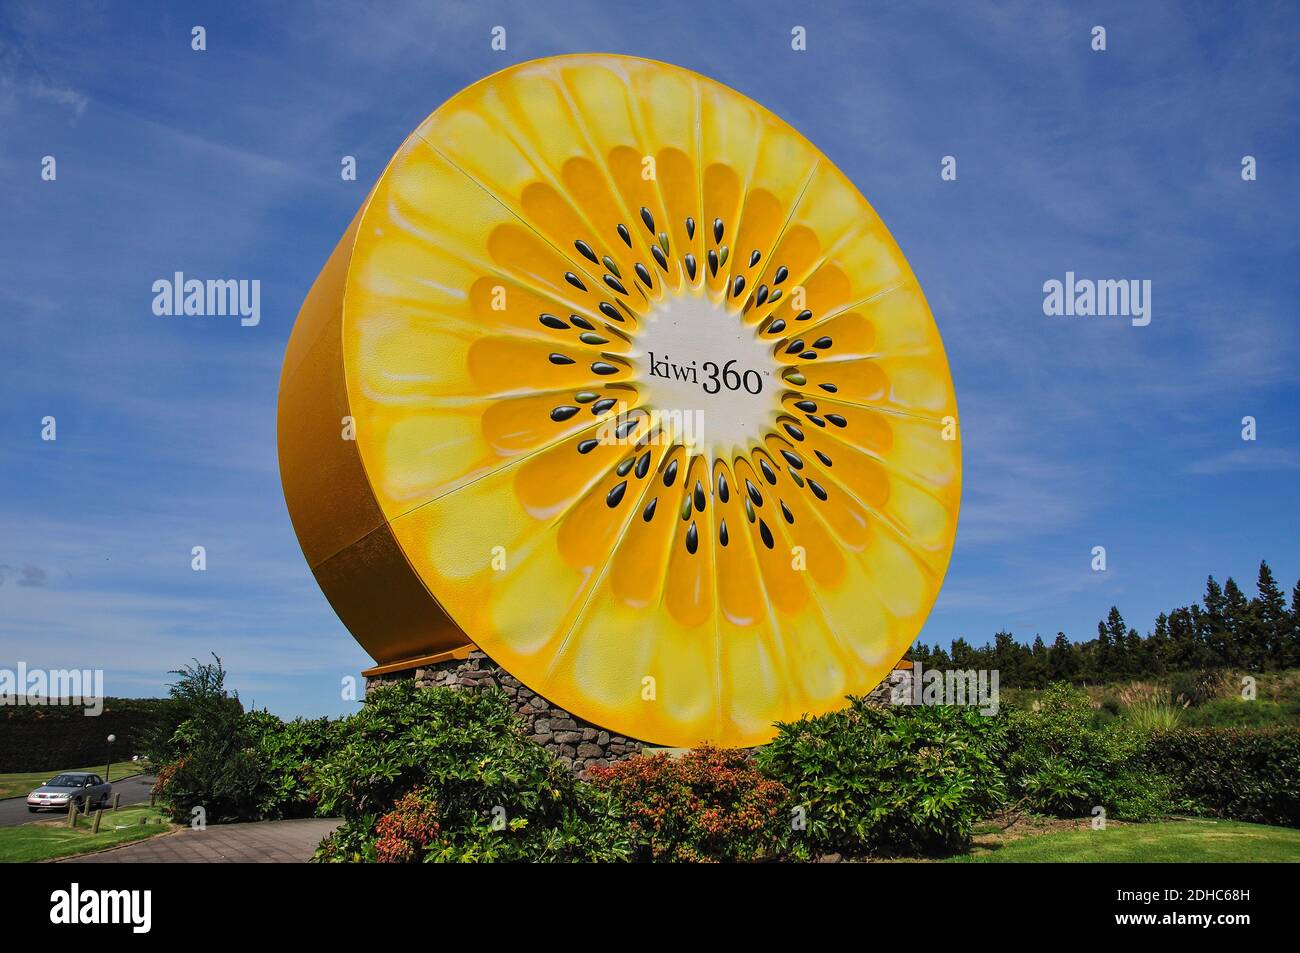 The Kiwi360 giant kiwifruit sign, Te Puke, Bay of Plenty Region, North Island, New Zealand Stock Photo